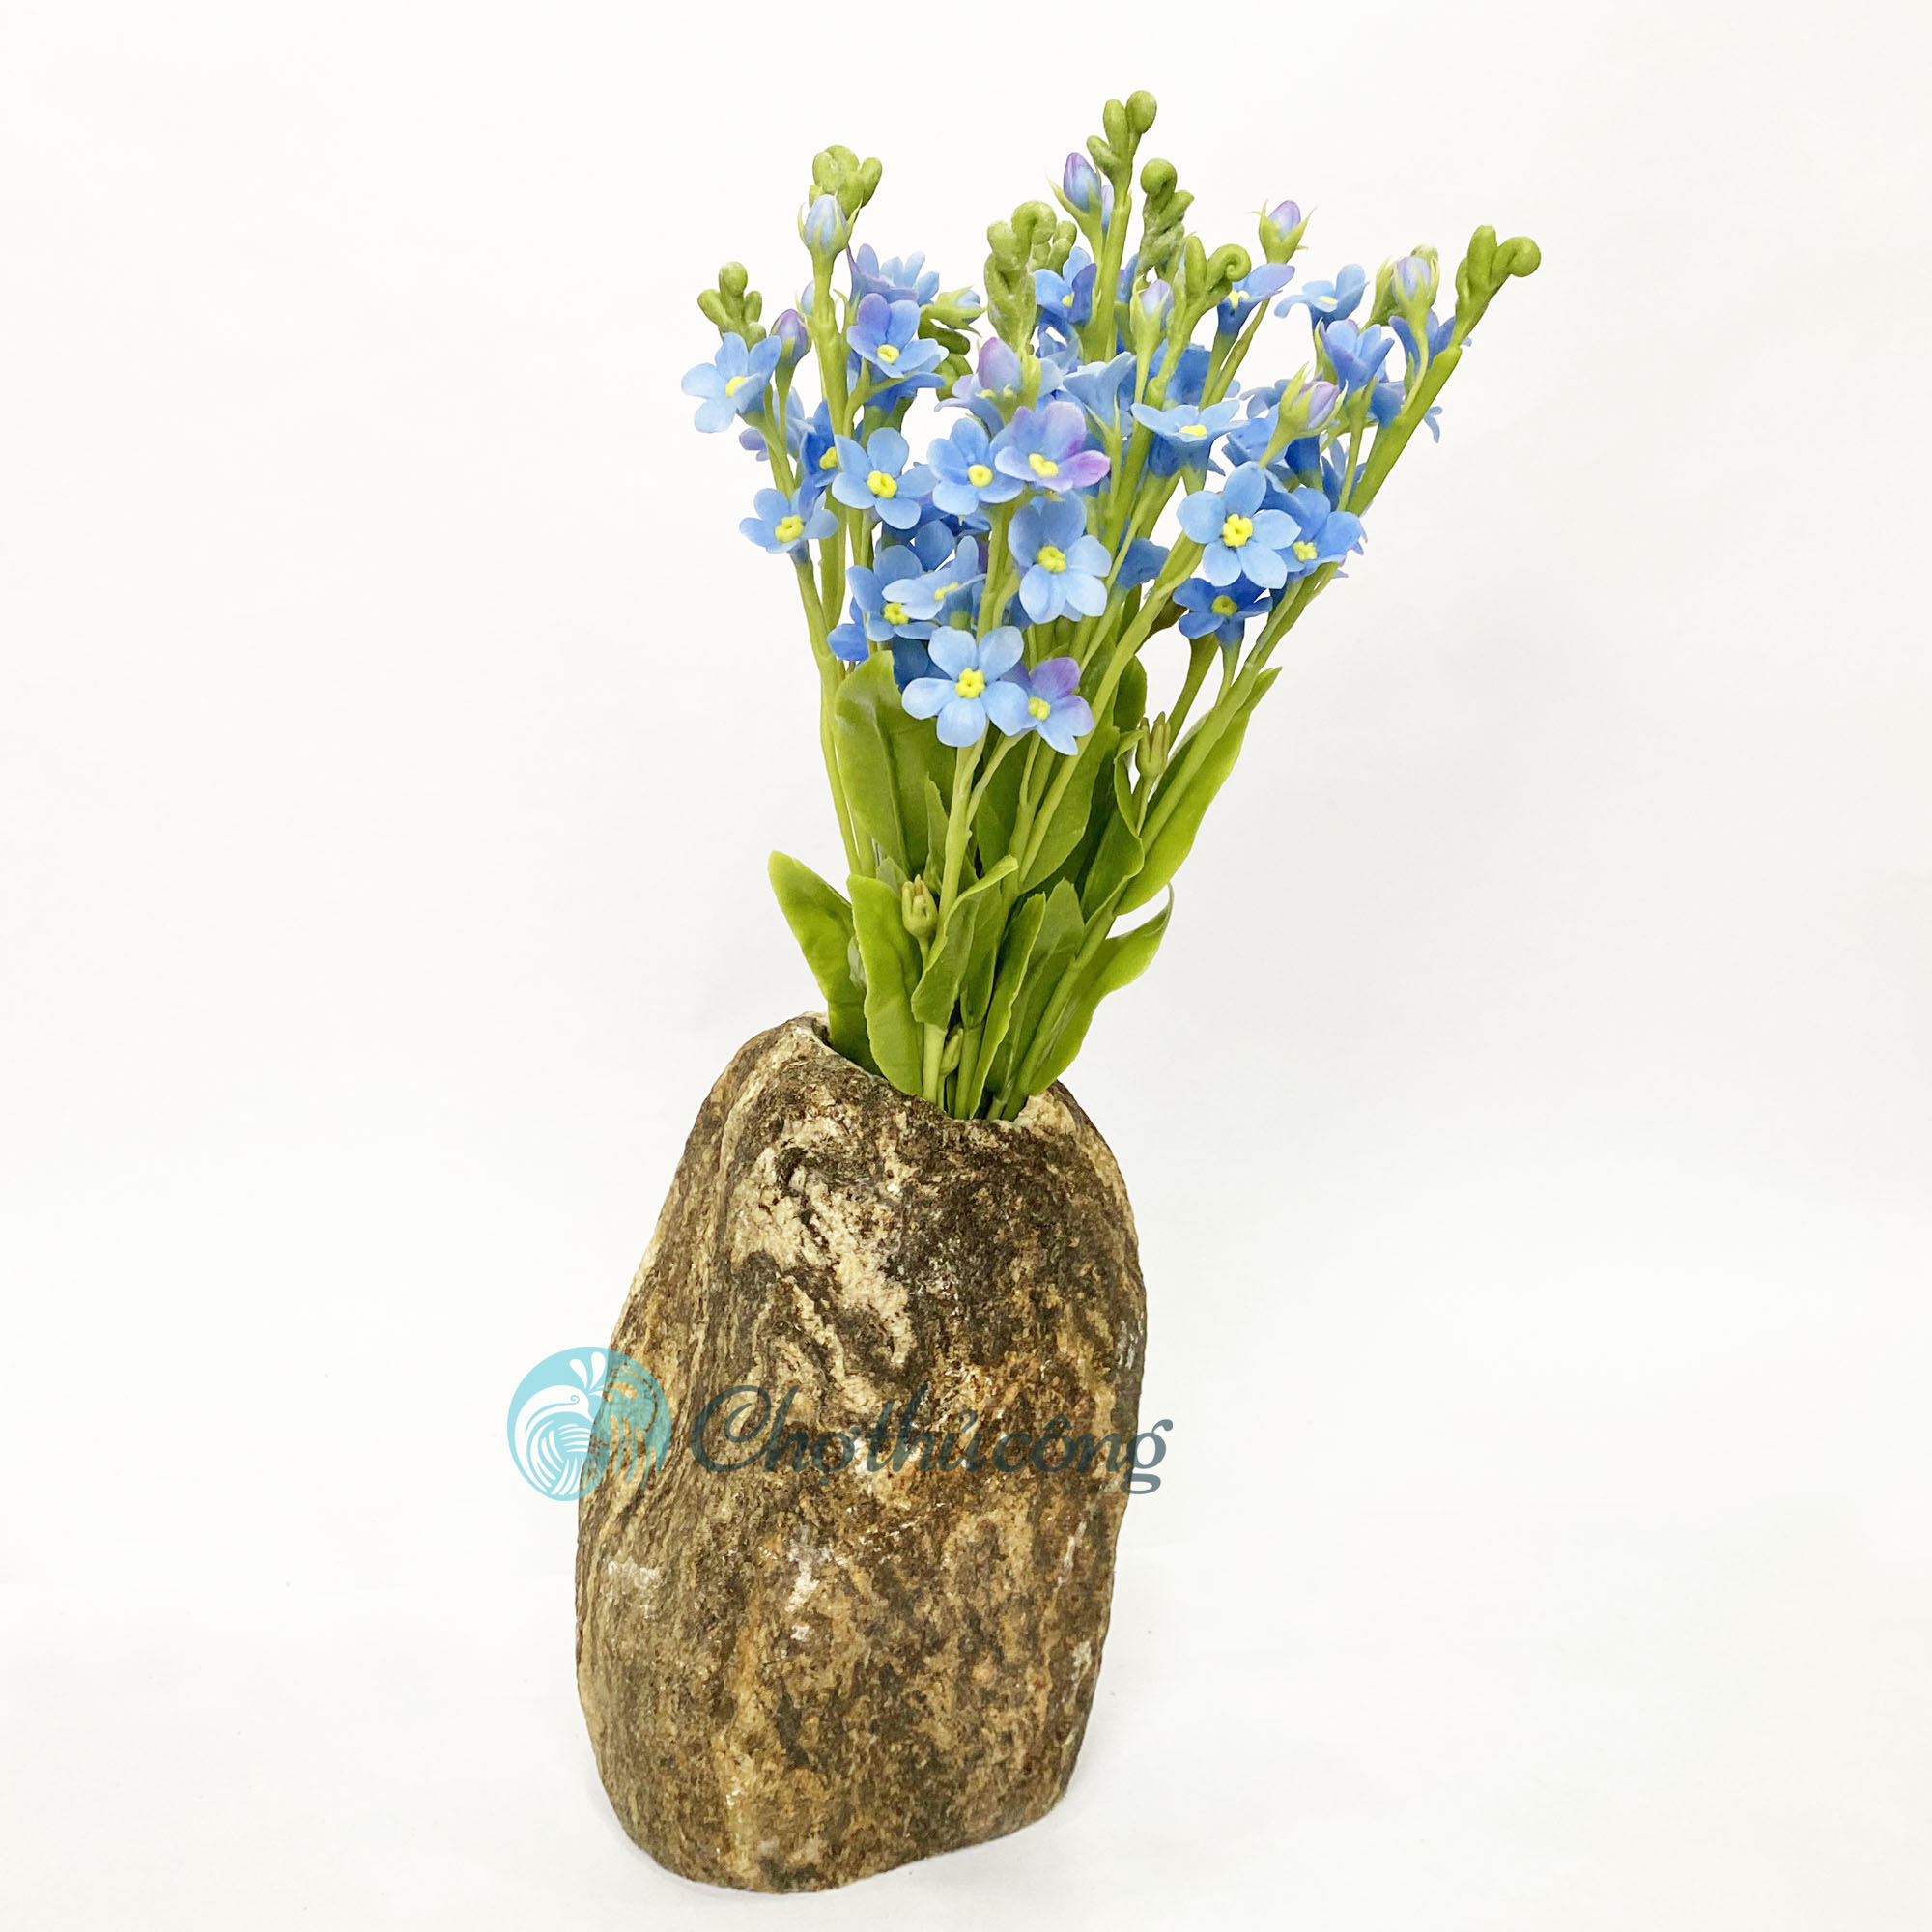 Lọ hoa đá tự nhiên dùng làm bình hoa decor, bình cắm hoa - Chậu đá cuội trang trí tiểu cảnh, bình hoa đẹp trồng bonsai [phát mẫu ngẫu nhiên]